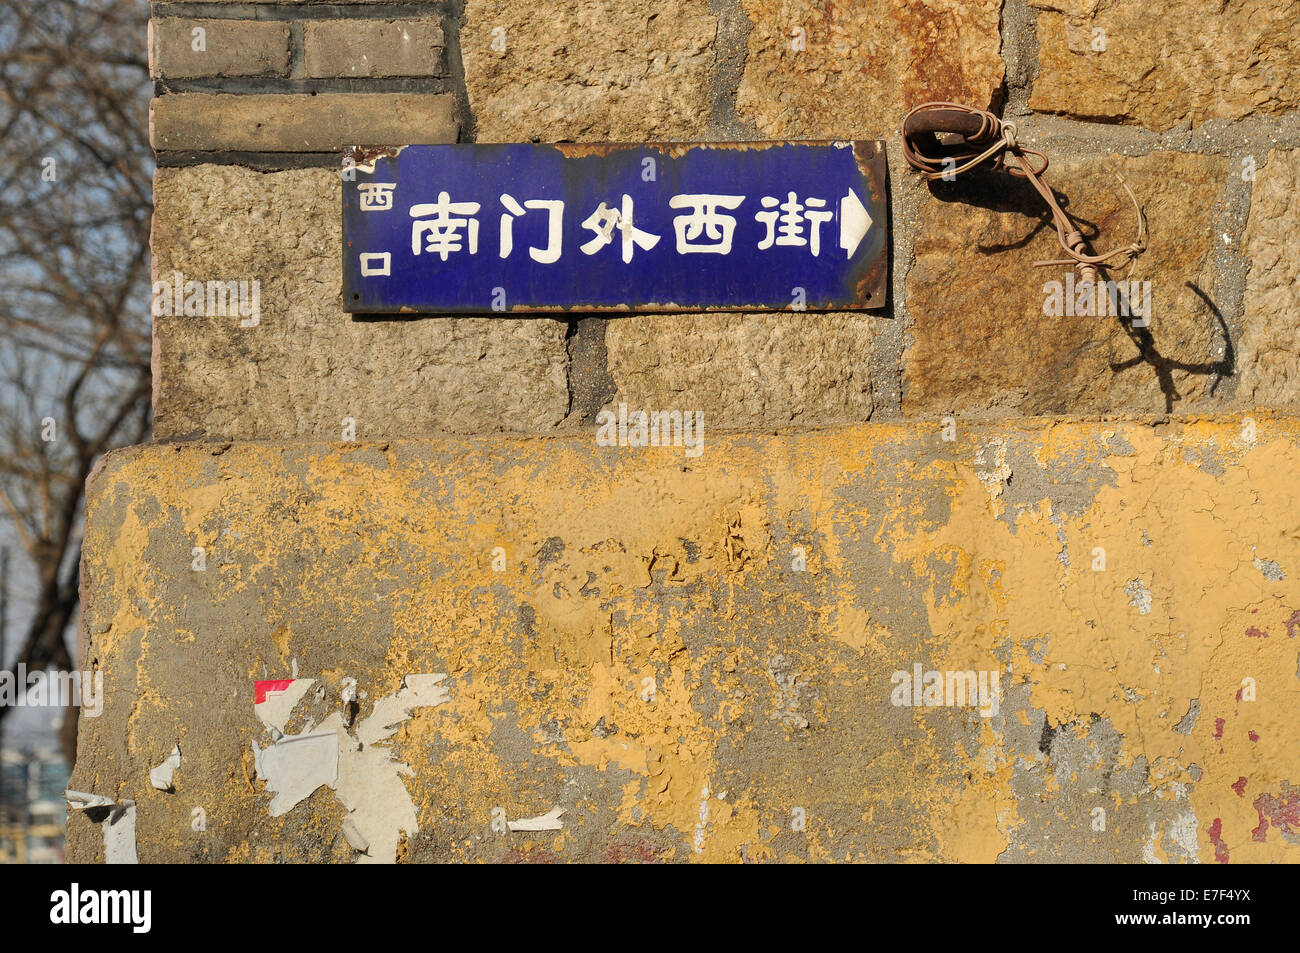 Street sign of a Hutong community in Yantai, Shandong, China Stock Photo